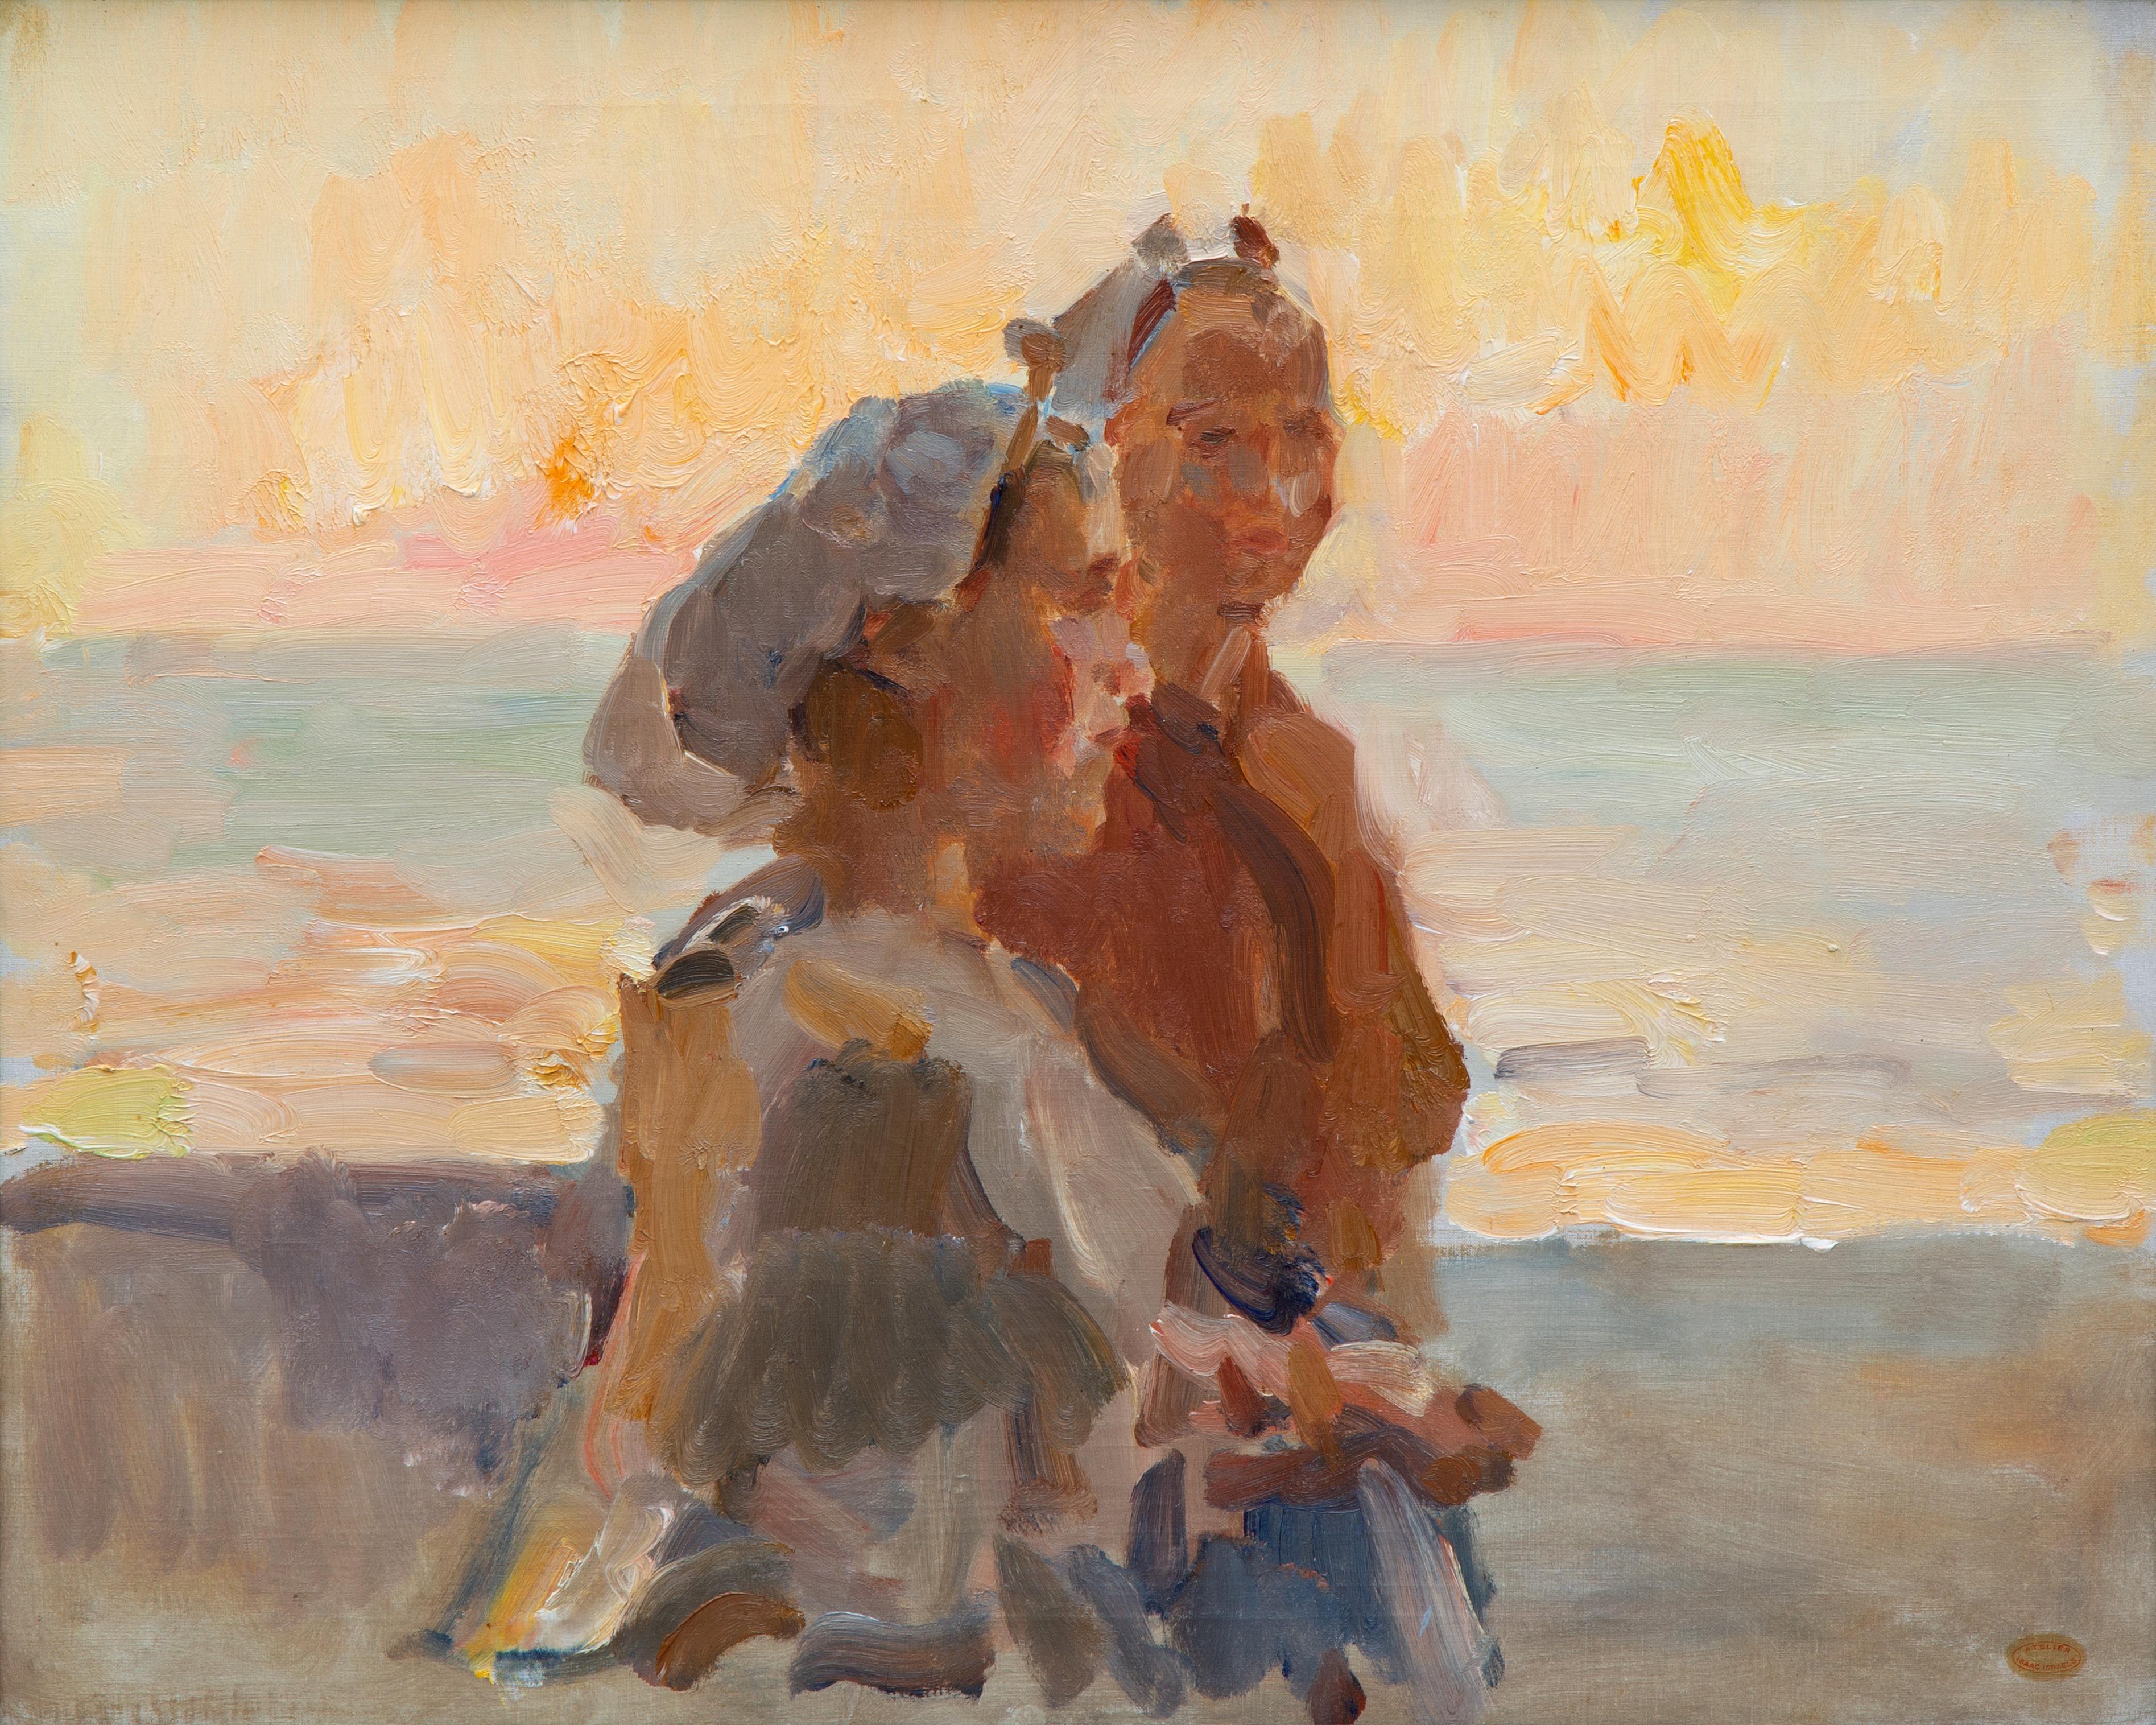 Two fisher women from Scheveningen on the beach